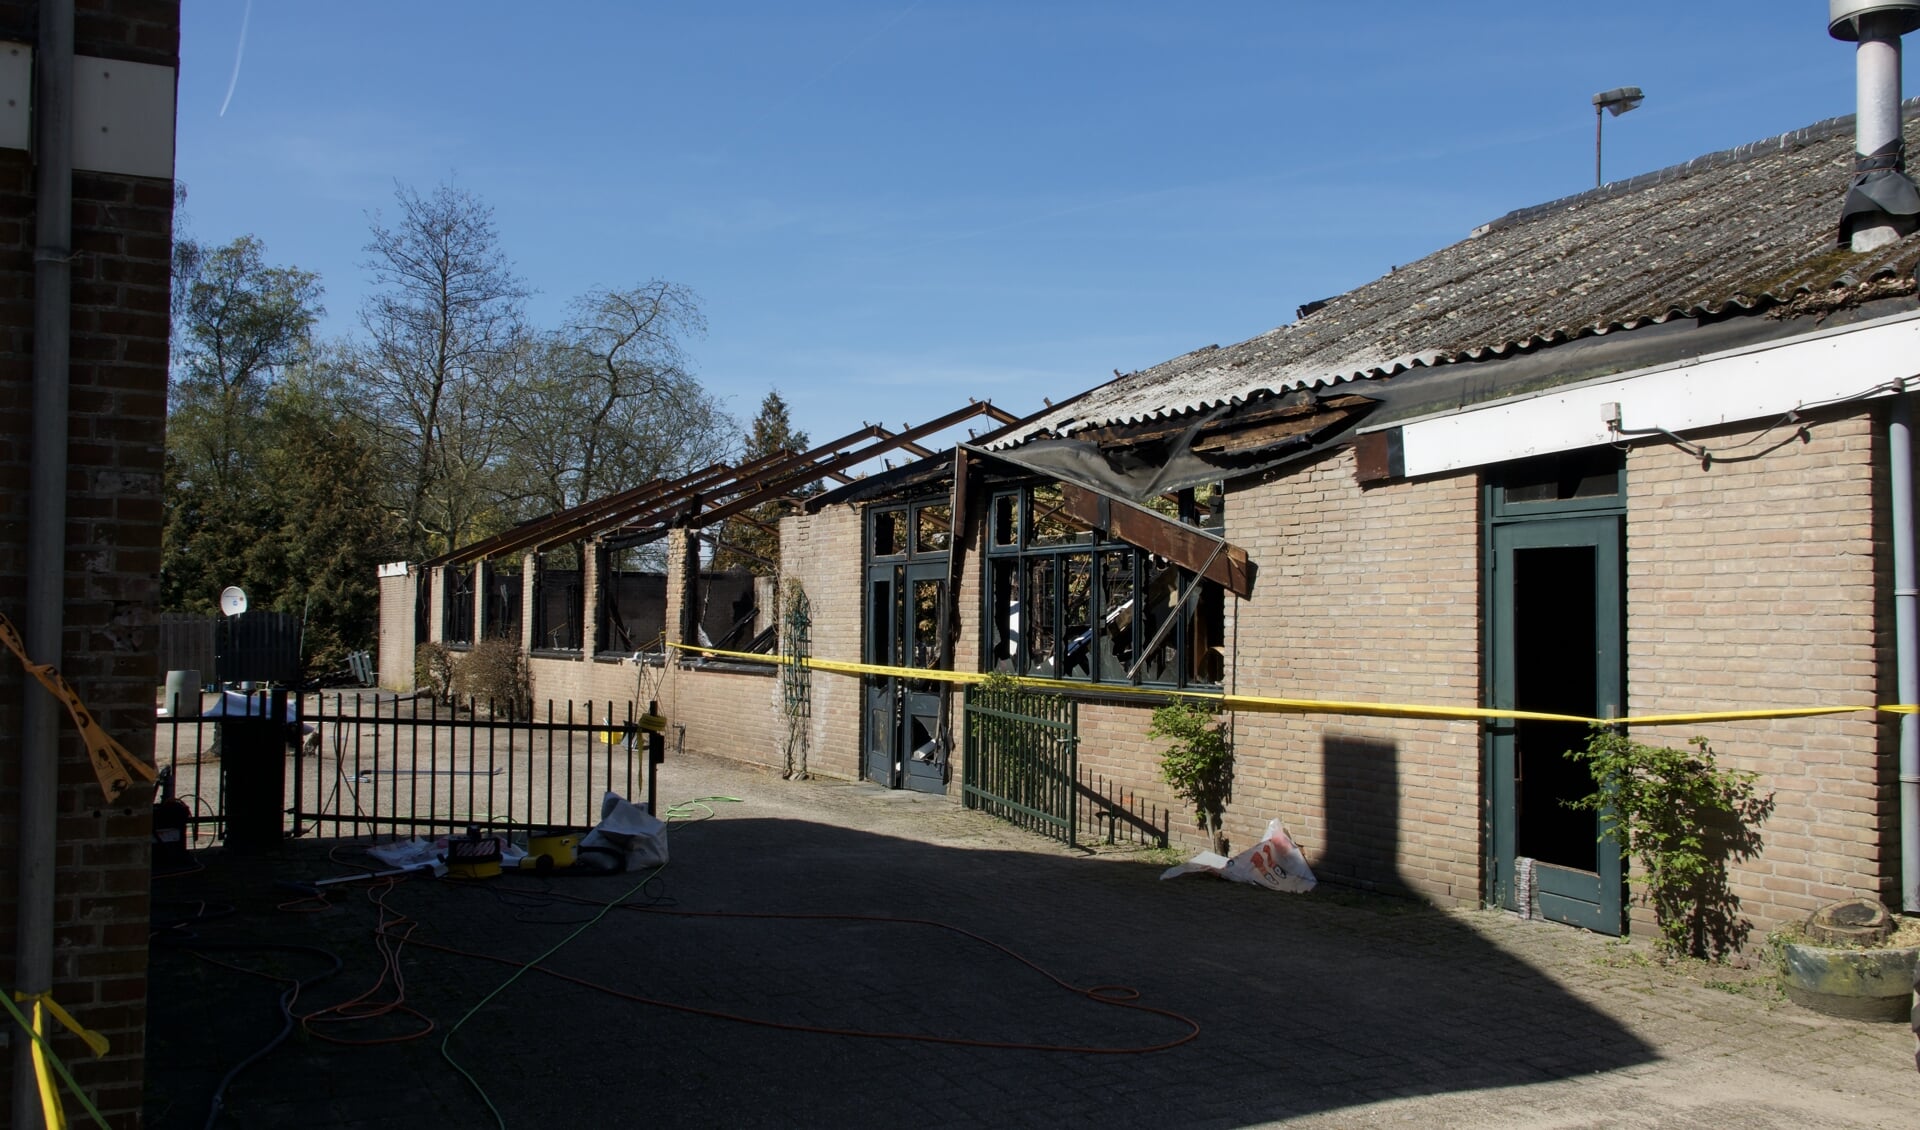 Café De Sportvriend brandde in 2020 af. 